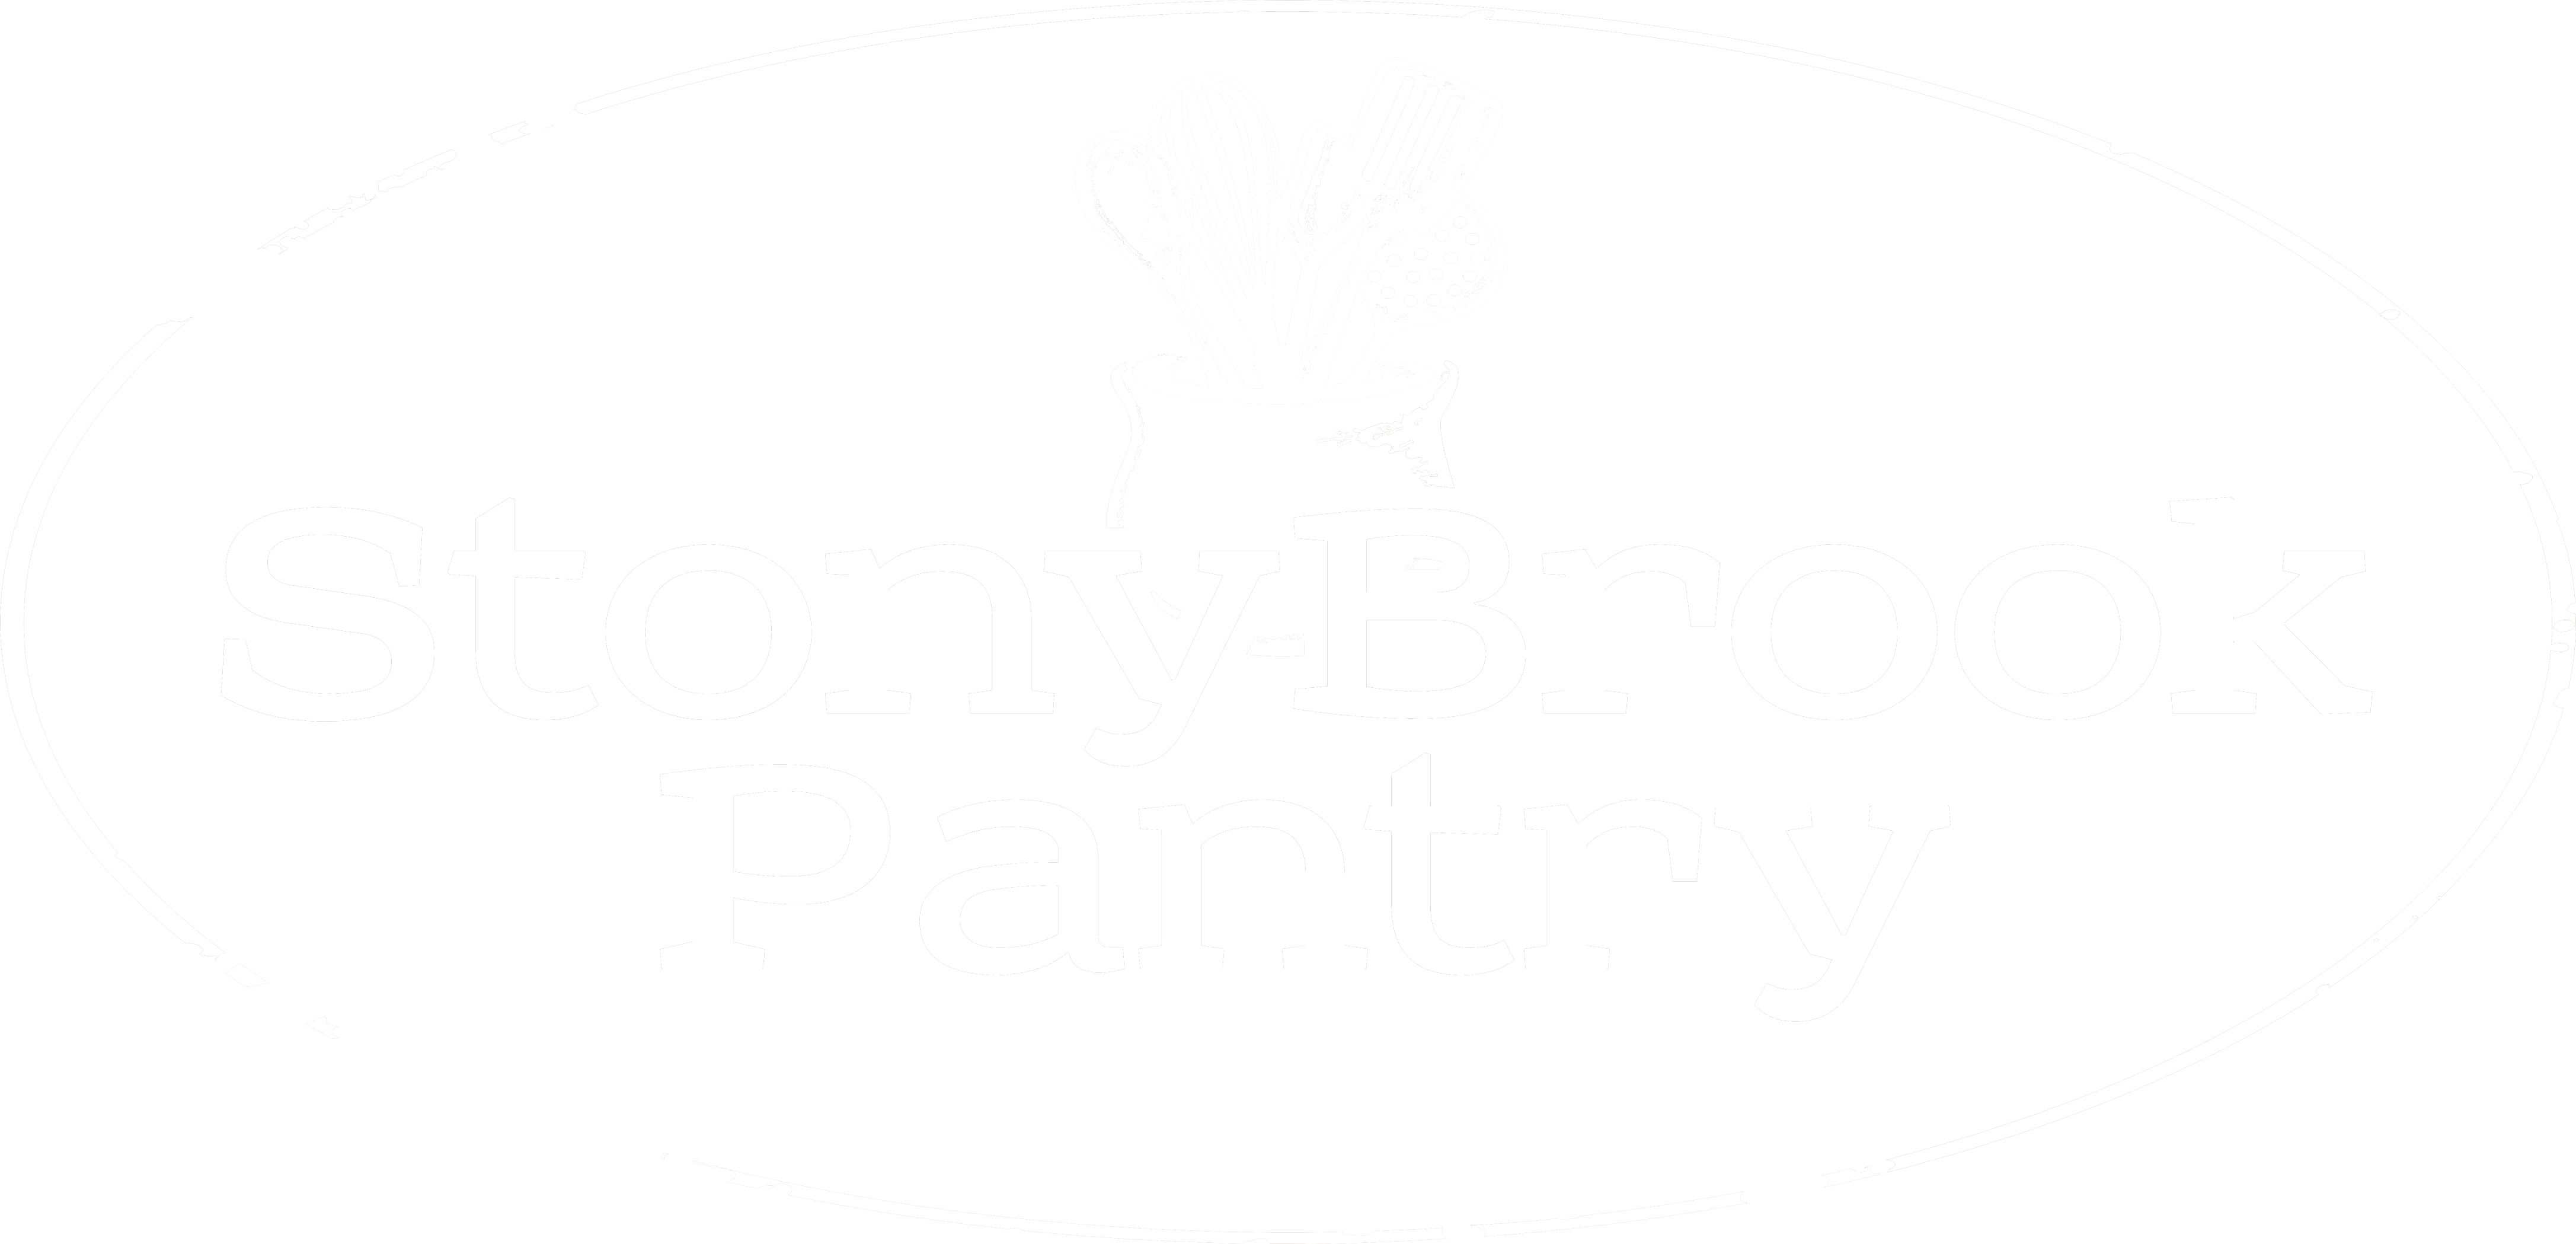 Stony Brook Pantry - Logo